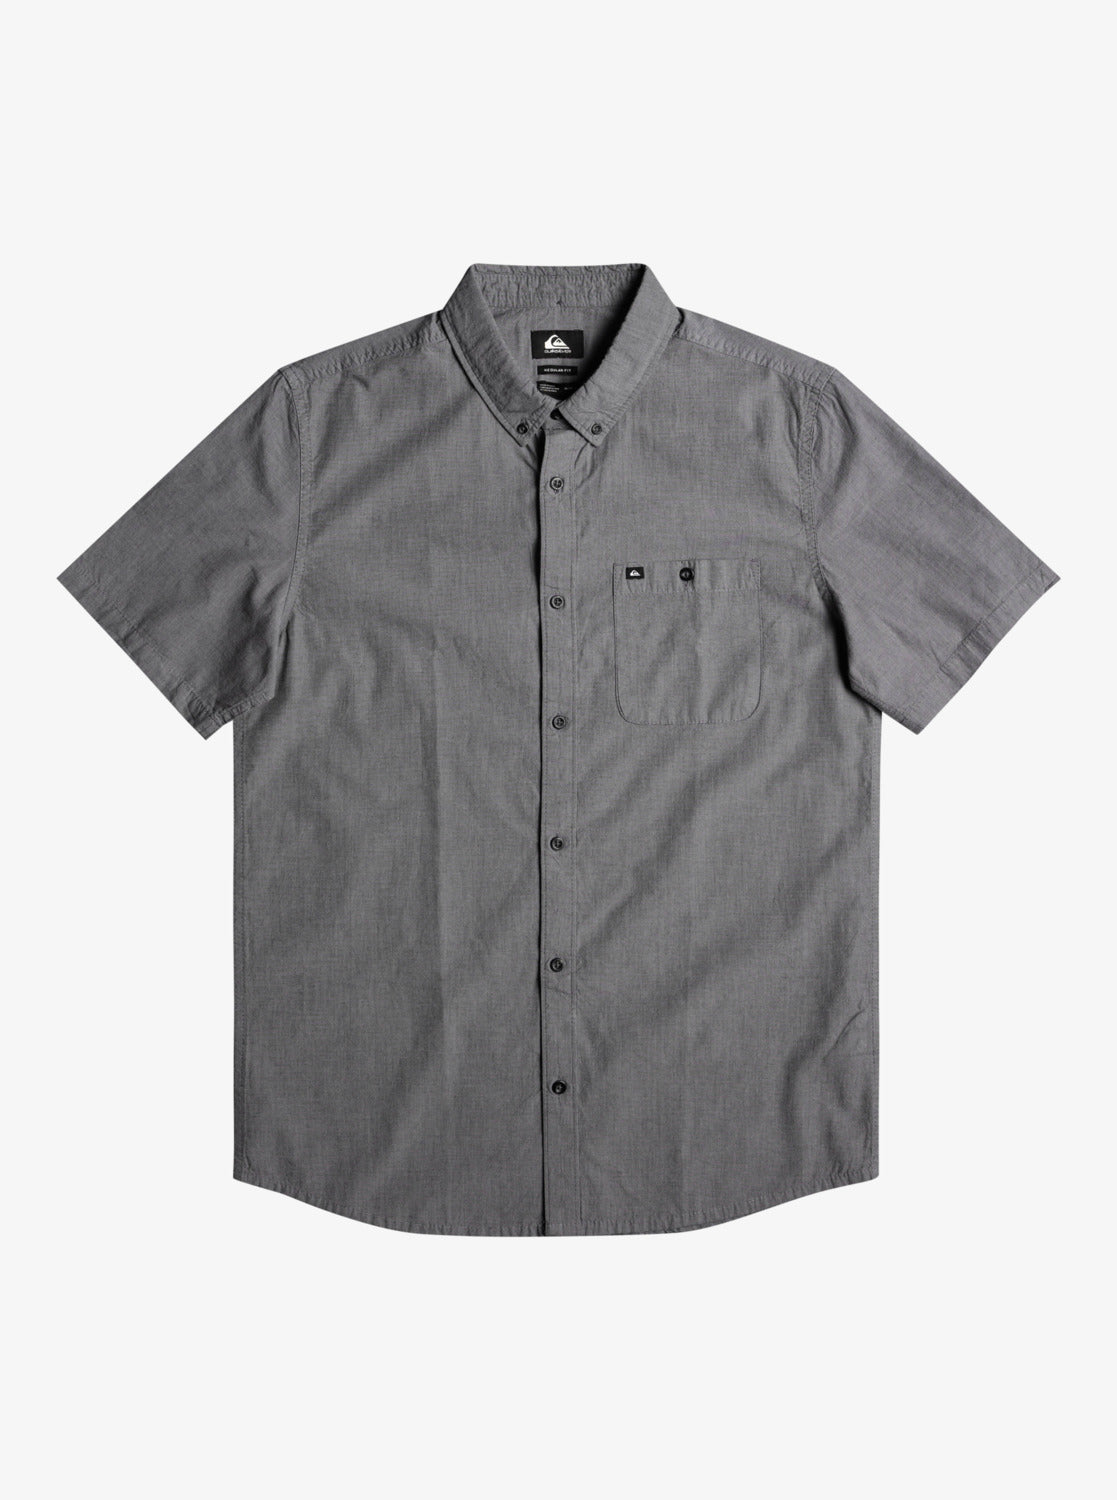 Winfall Short Sleeve Shirt - EQYWT04124